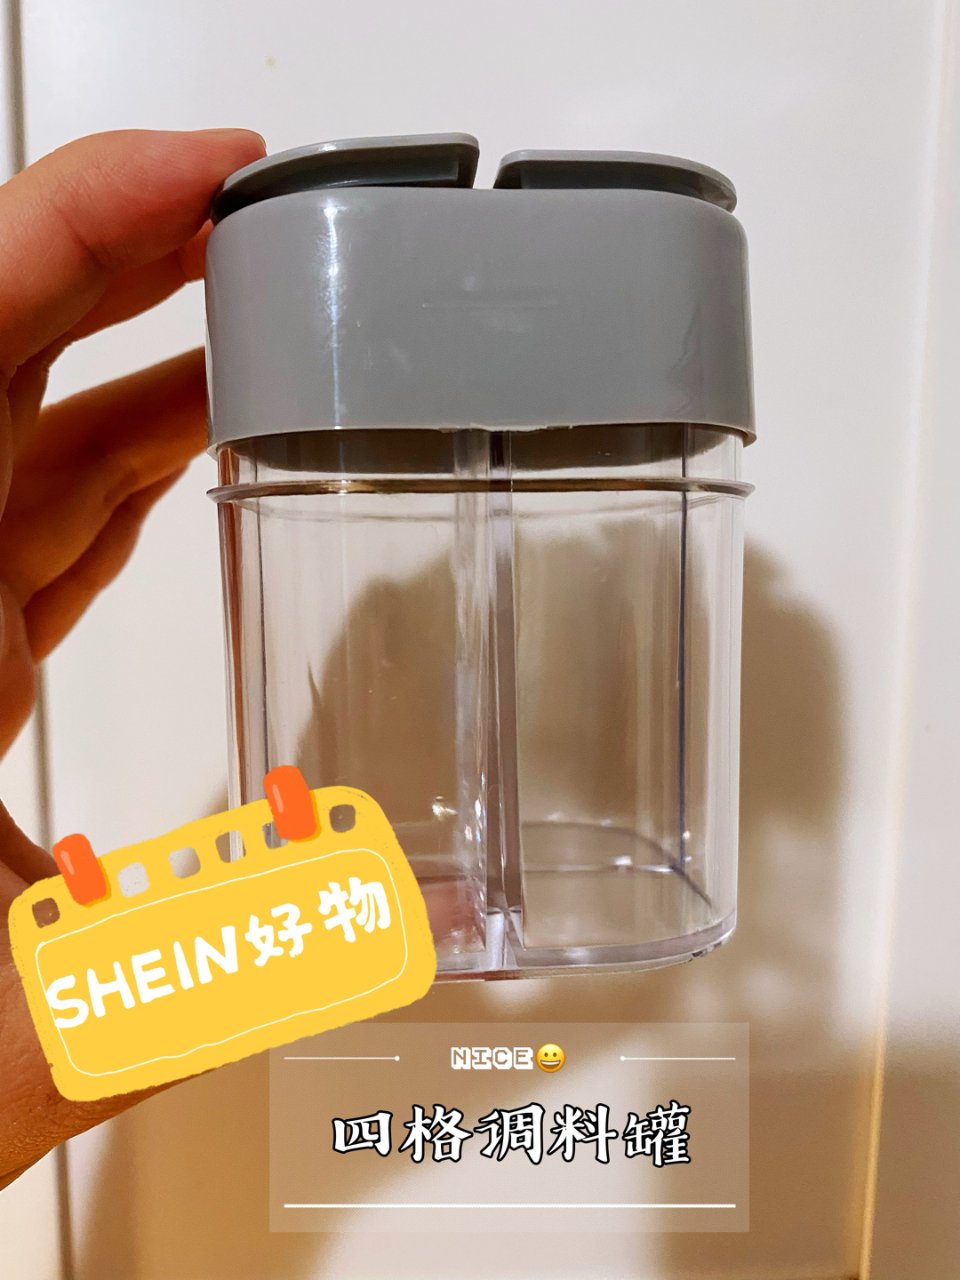 SHEIN厨房小物件 | 四格调料罐 |...